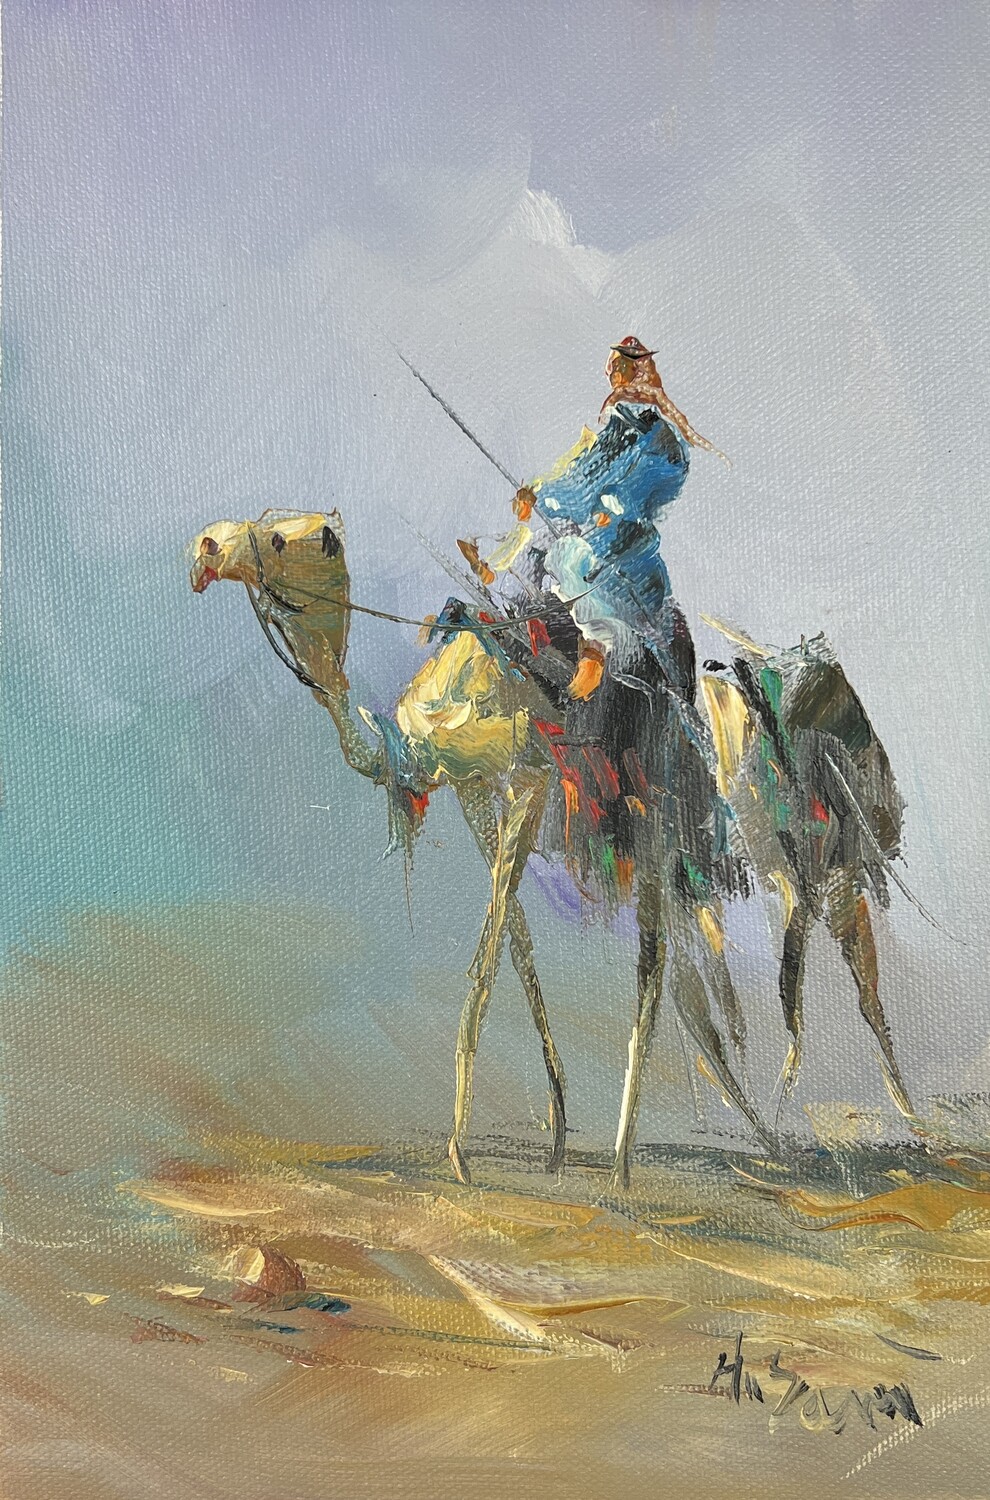 Bedouin & Camel in the Desert - Knife Art Oil Painting